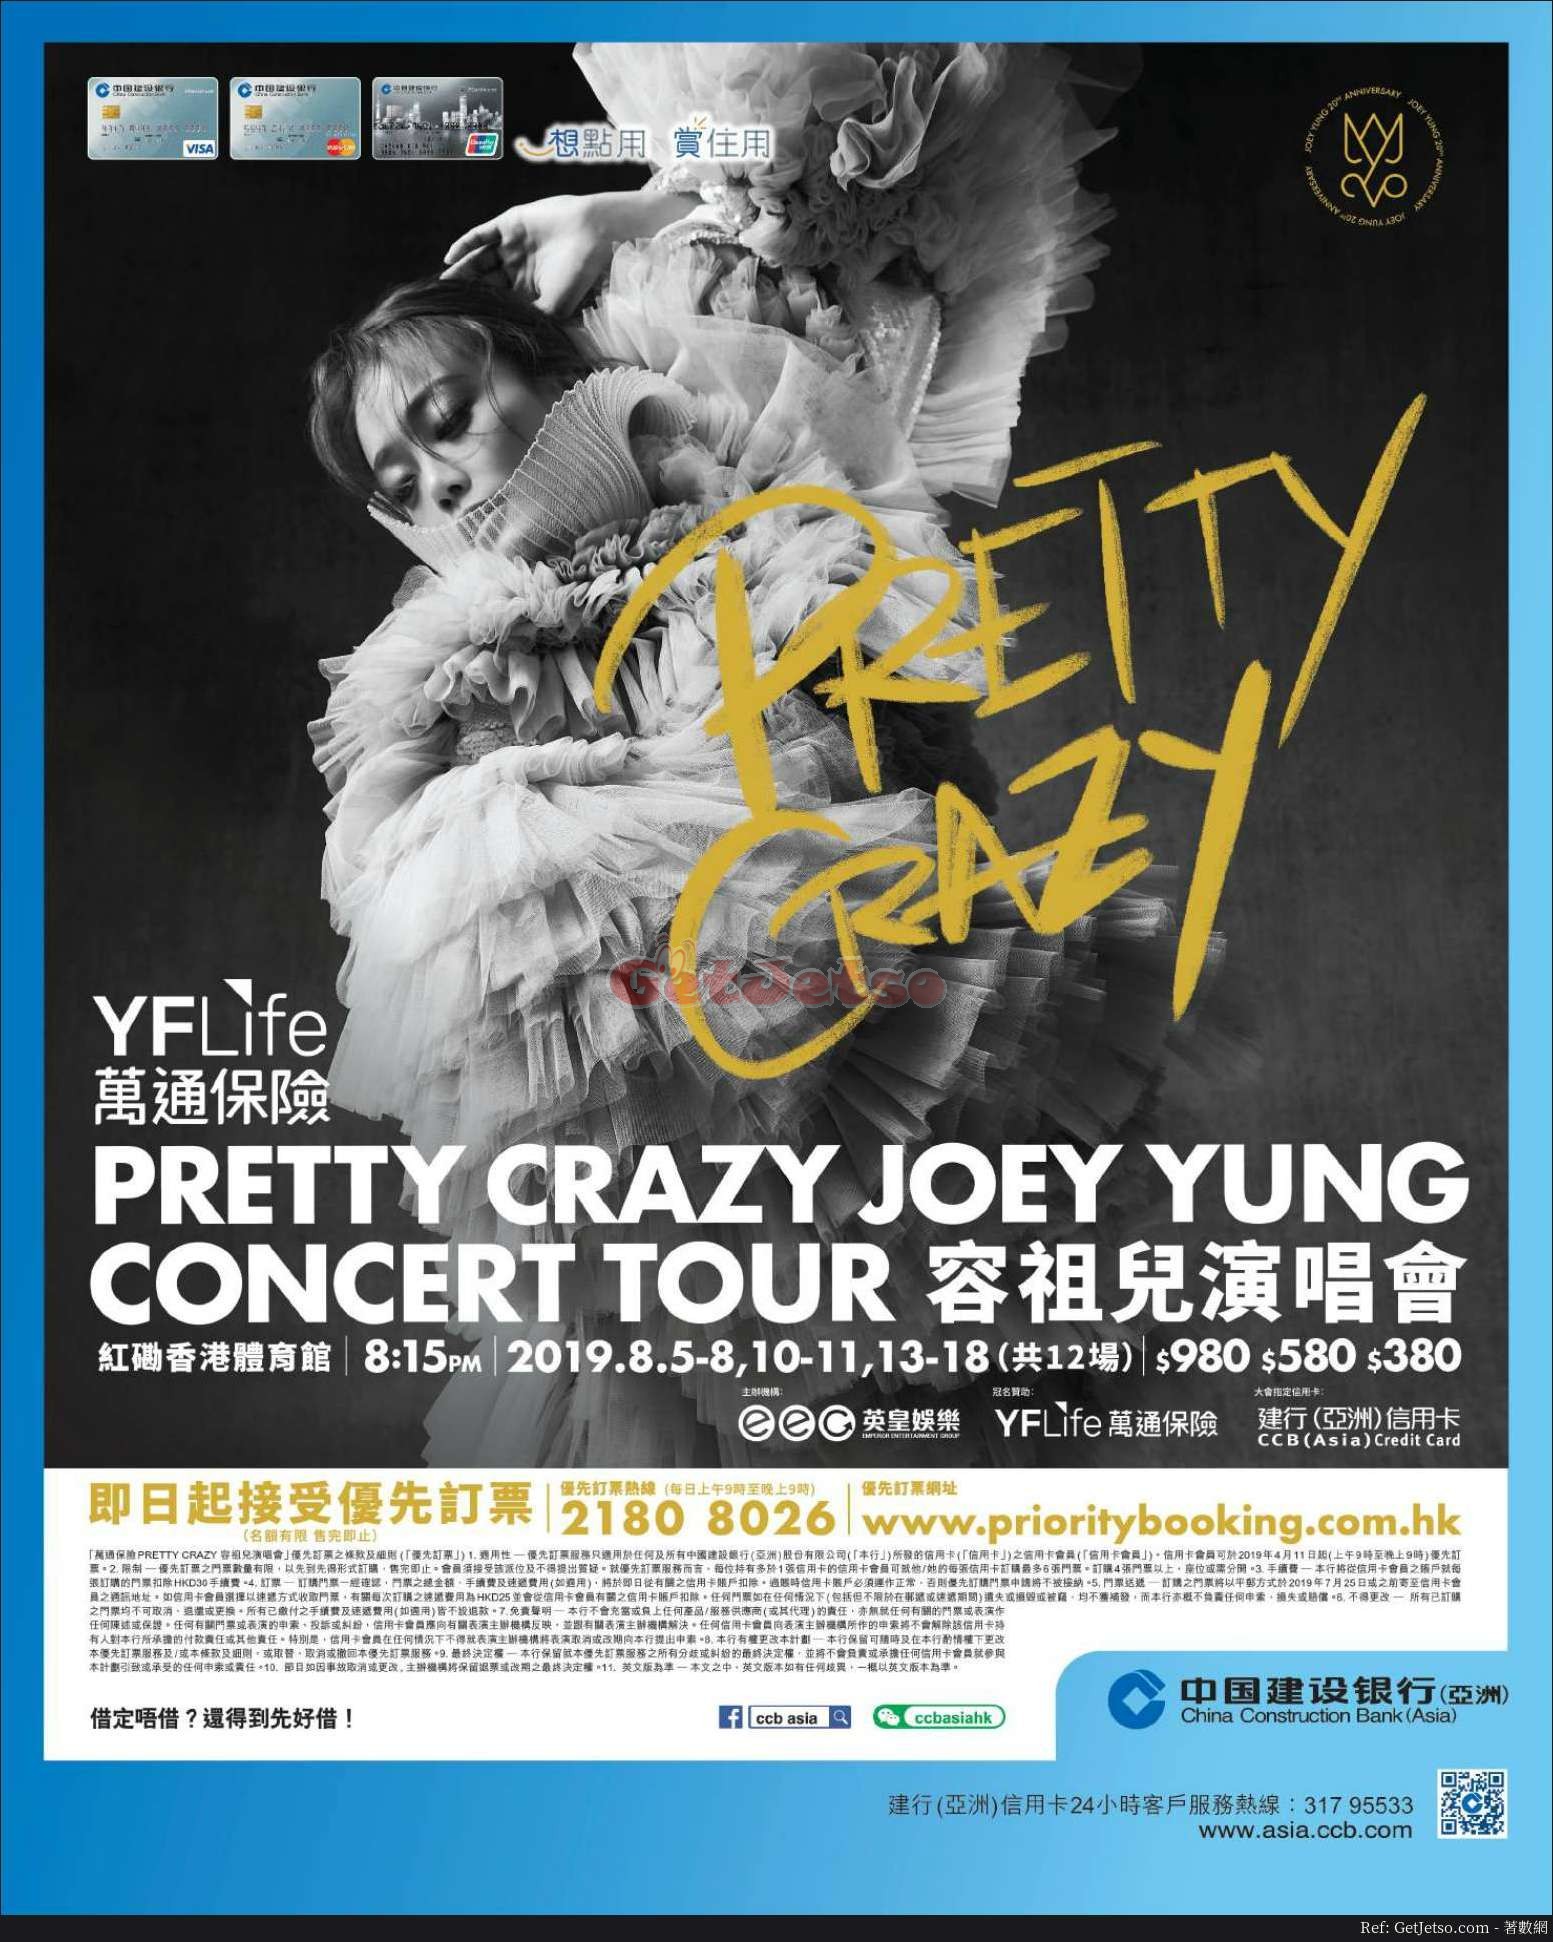 容祖兒演唱會PRETTY CRAZY JOEY YUNG CONCERT TOUR優先訂票優惠@建行信用卡(19年4月11日起)圖片2